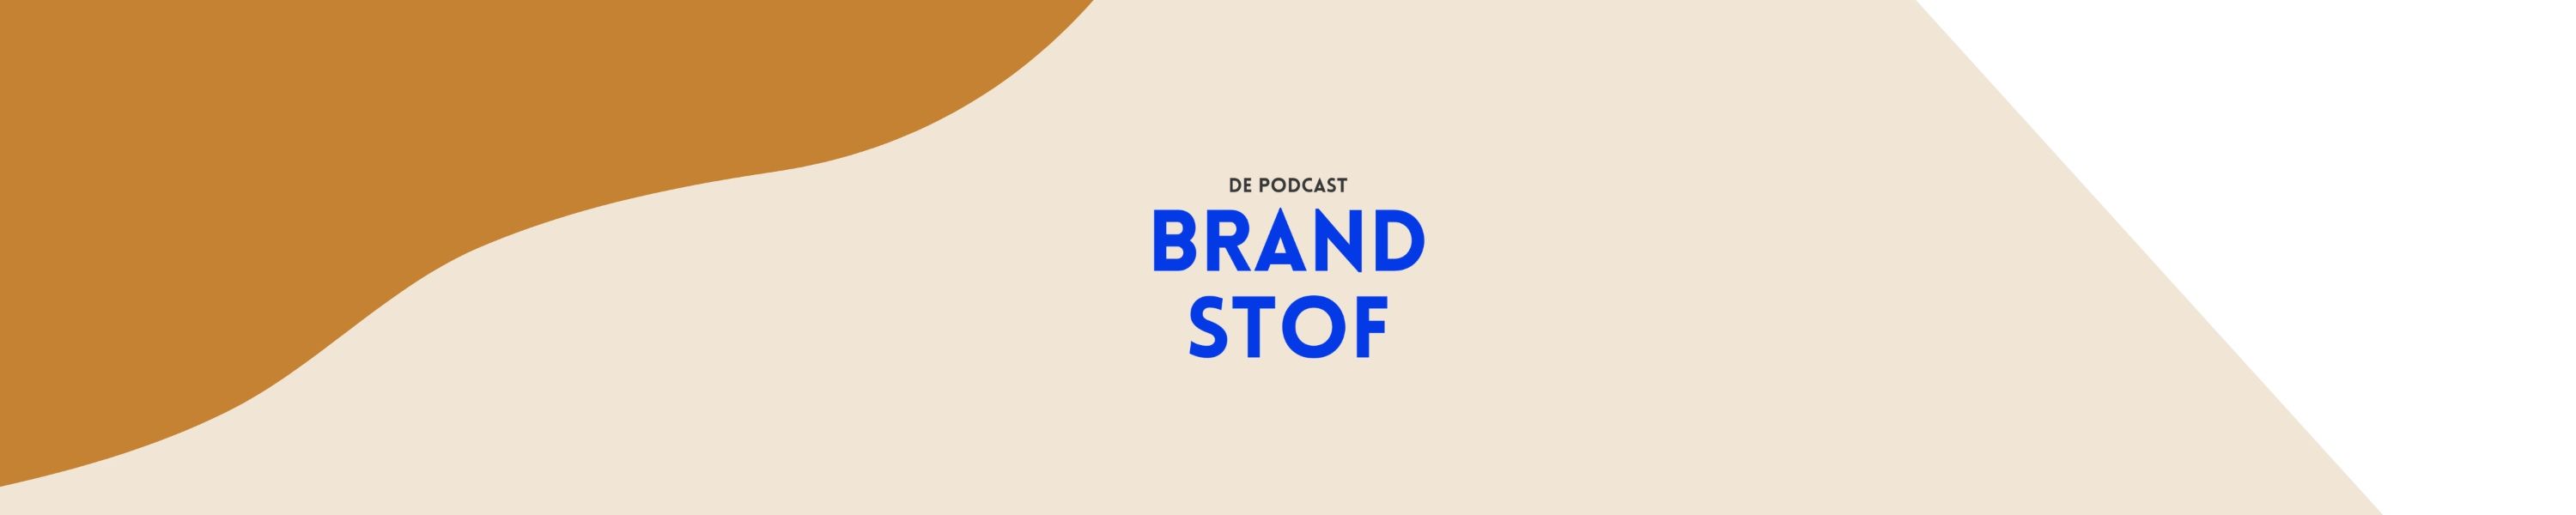 Brandstof De Podcast